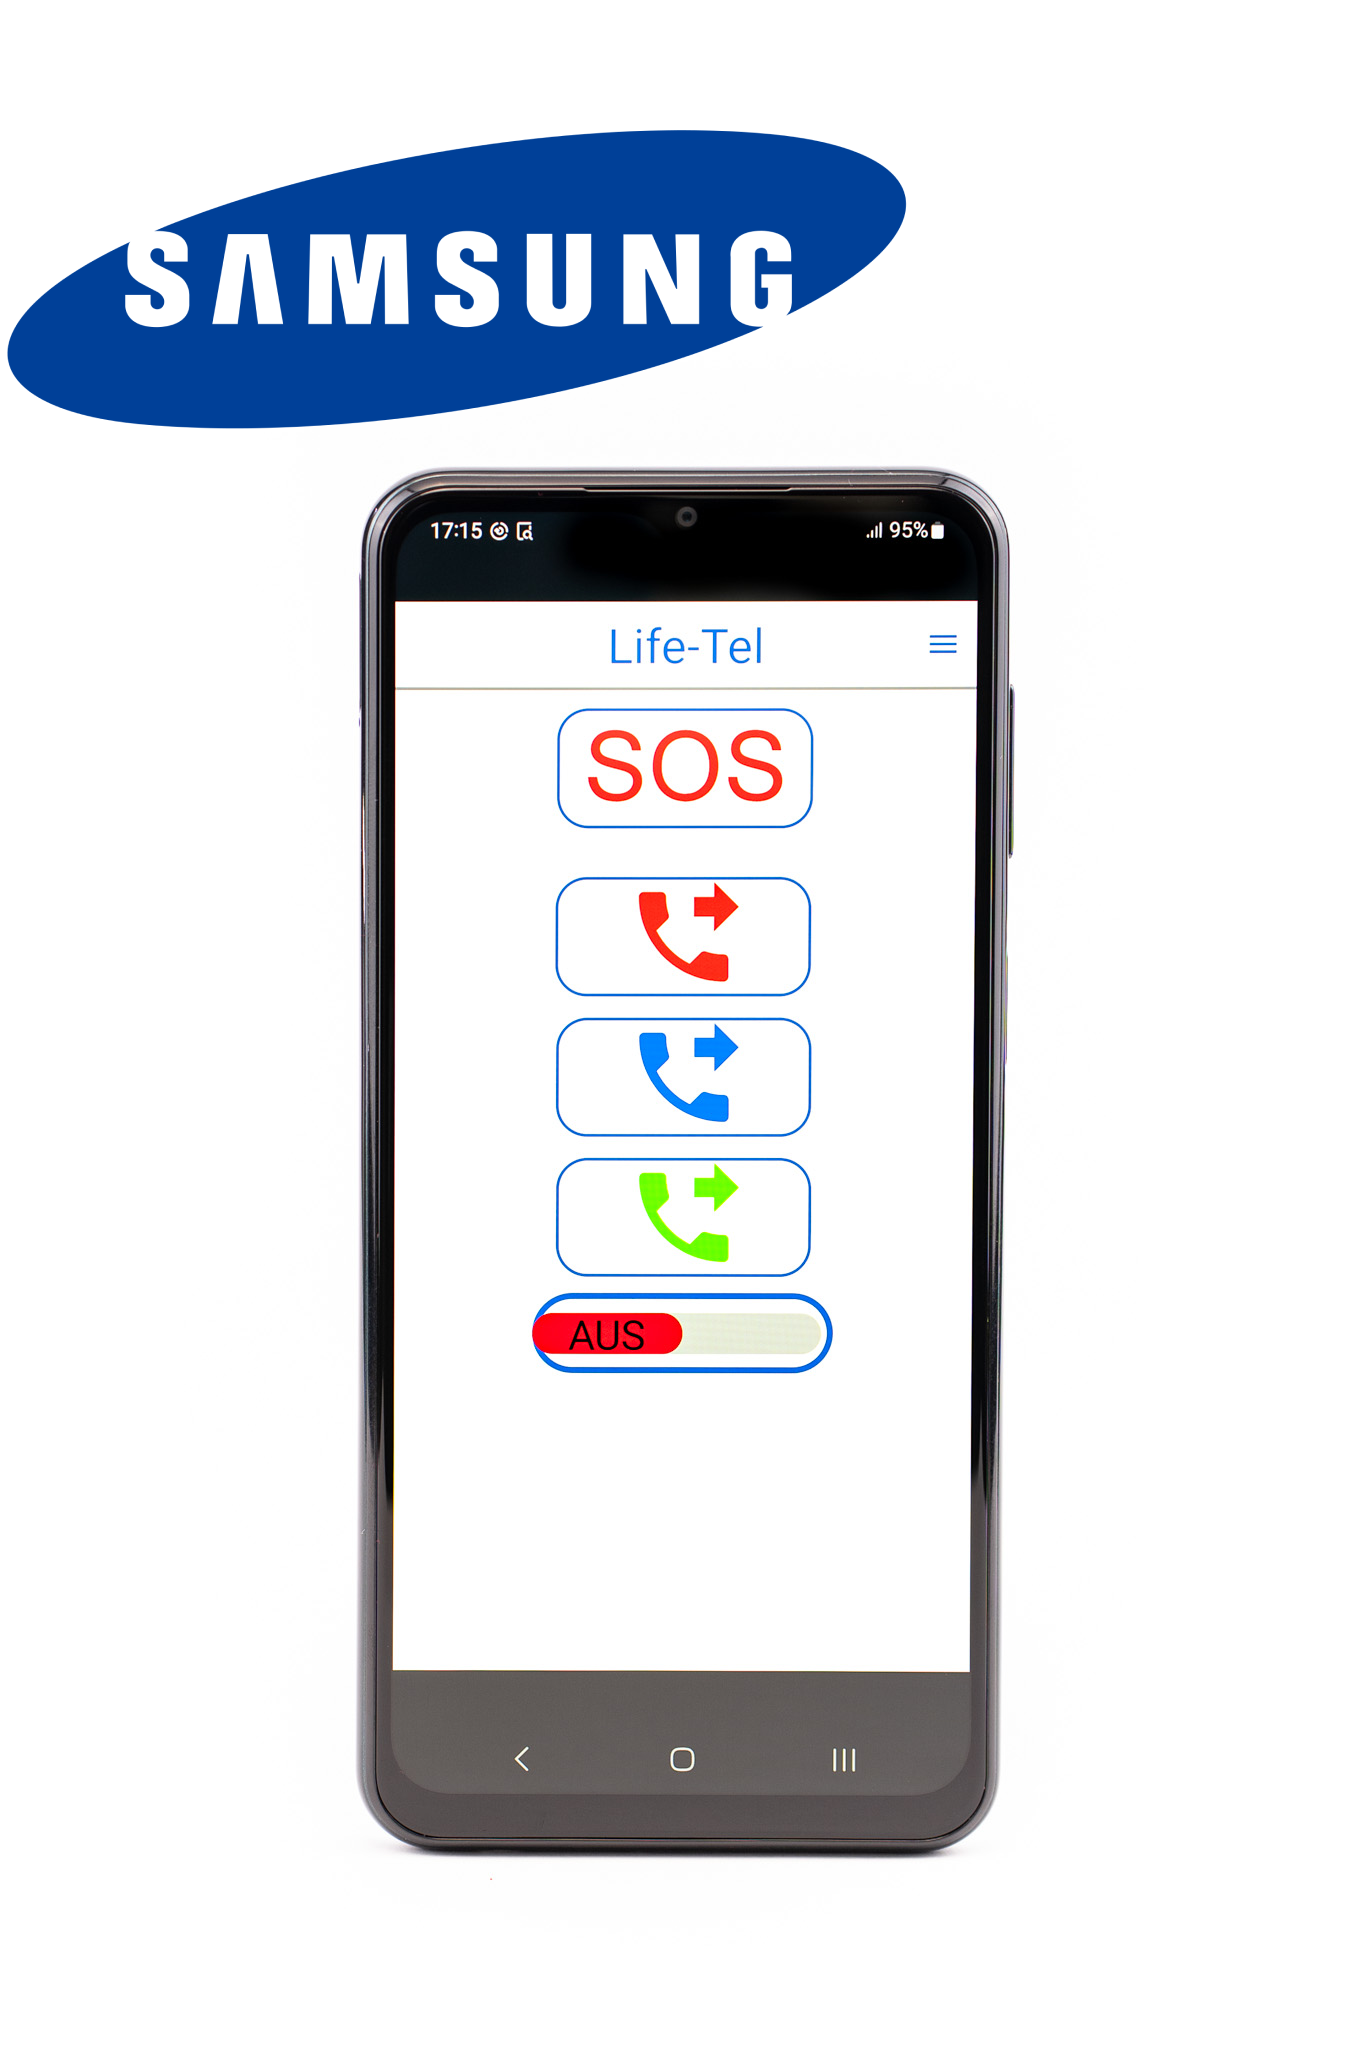 Smartfon Life Tel 7 L - 5G jako osobisty system sygnalizacji alarmowej dla pojedynczego stanowiska pracy wraz z aplikacją do połączeń alarmowych